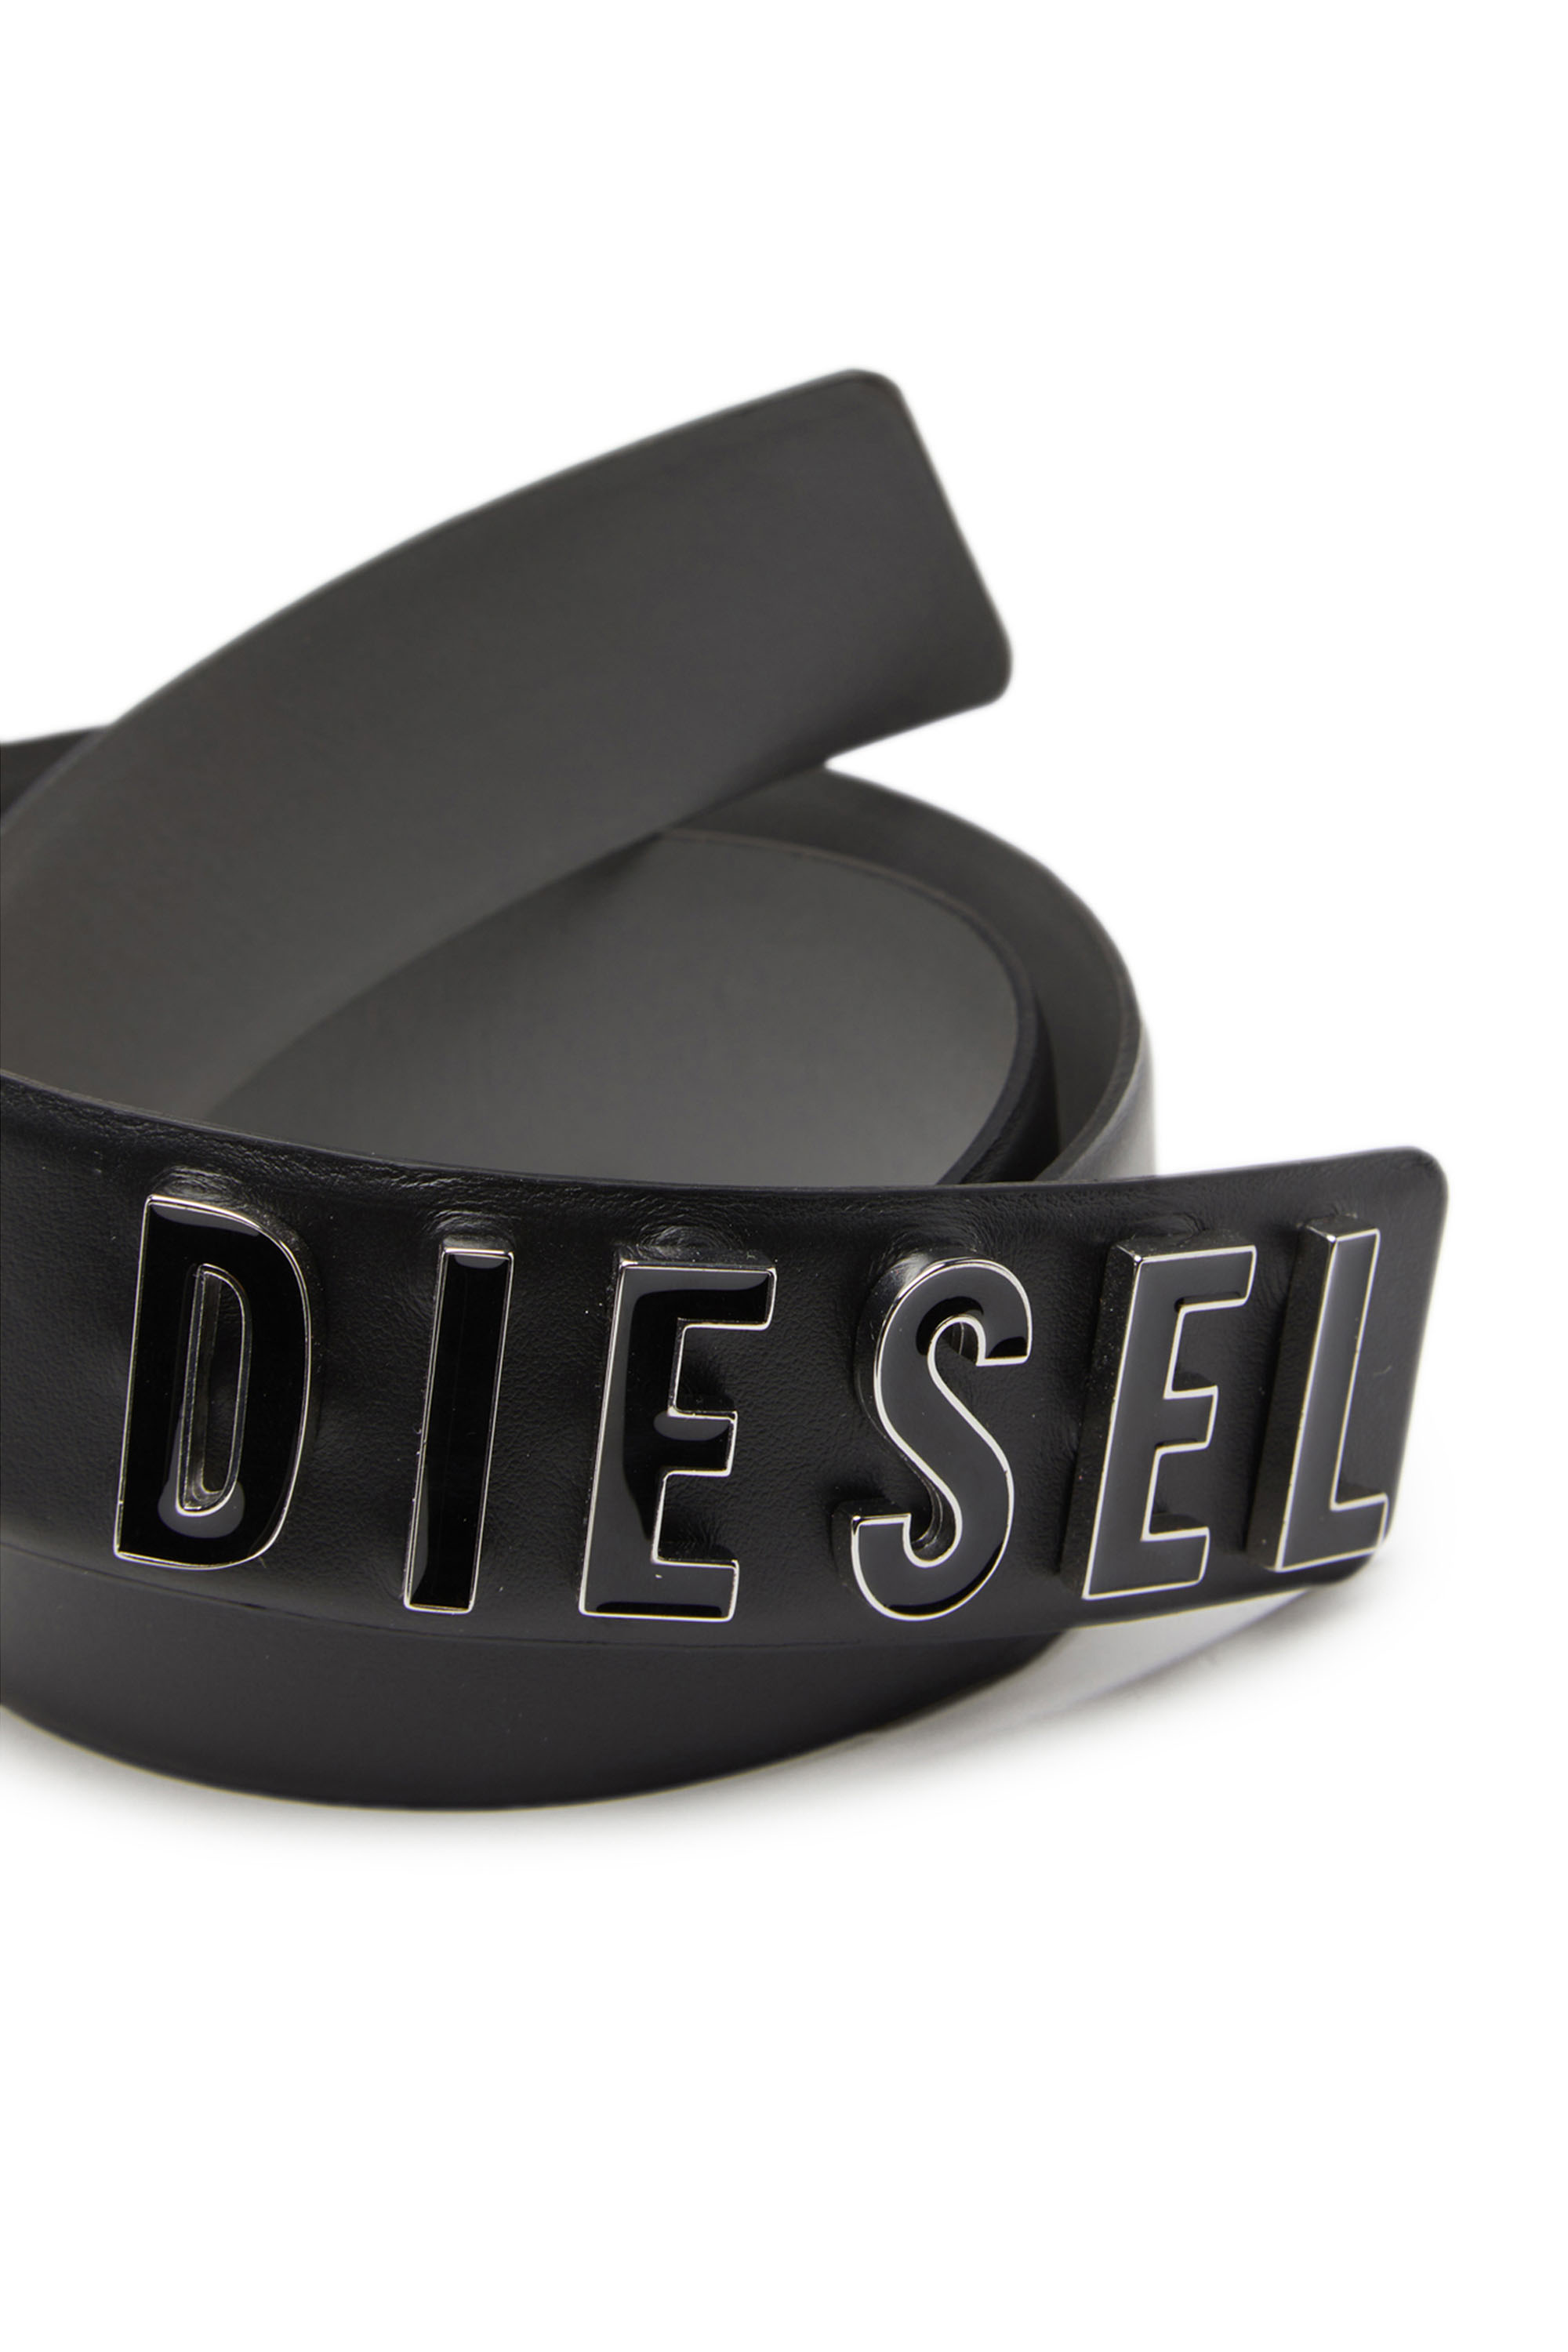 Diesel - B-LETTERS B, Black - Image 3